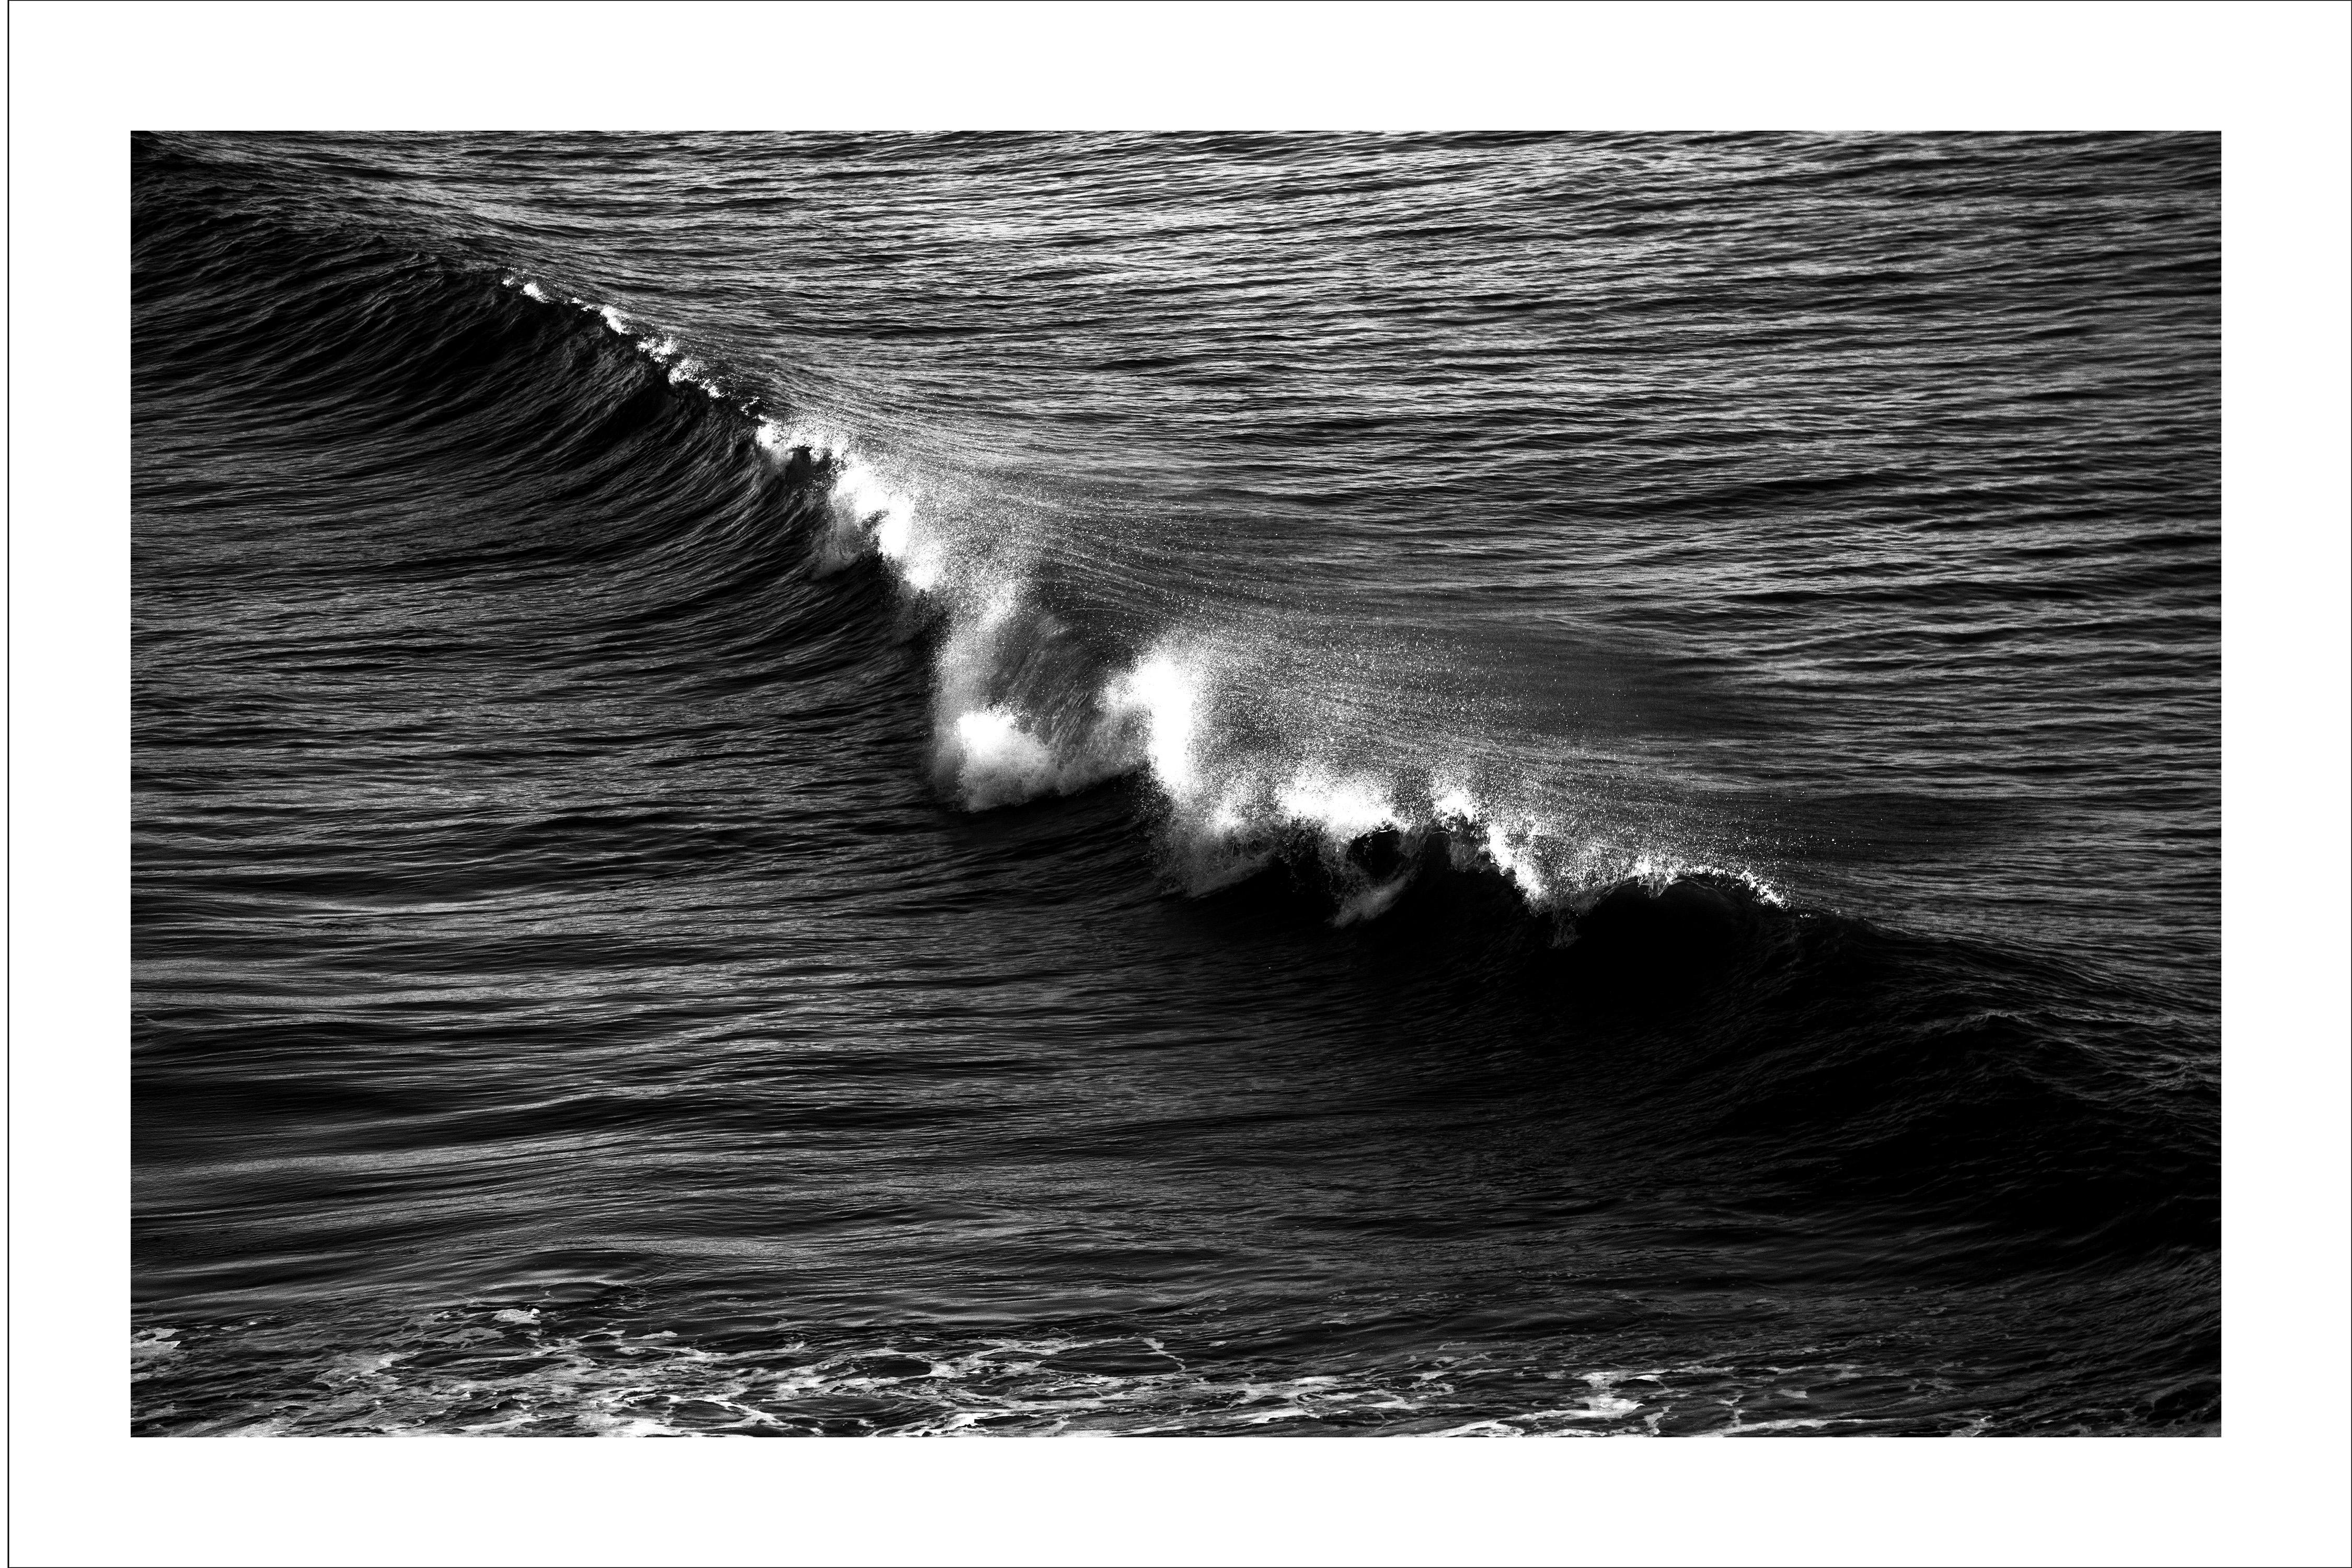 Paysage marin en noir et blanc de la vague tombante de Los Angeles, photographie contemporaine